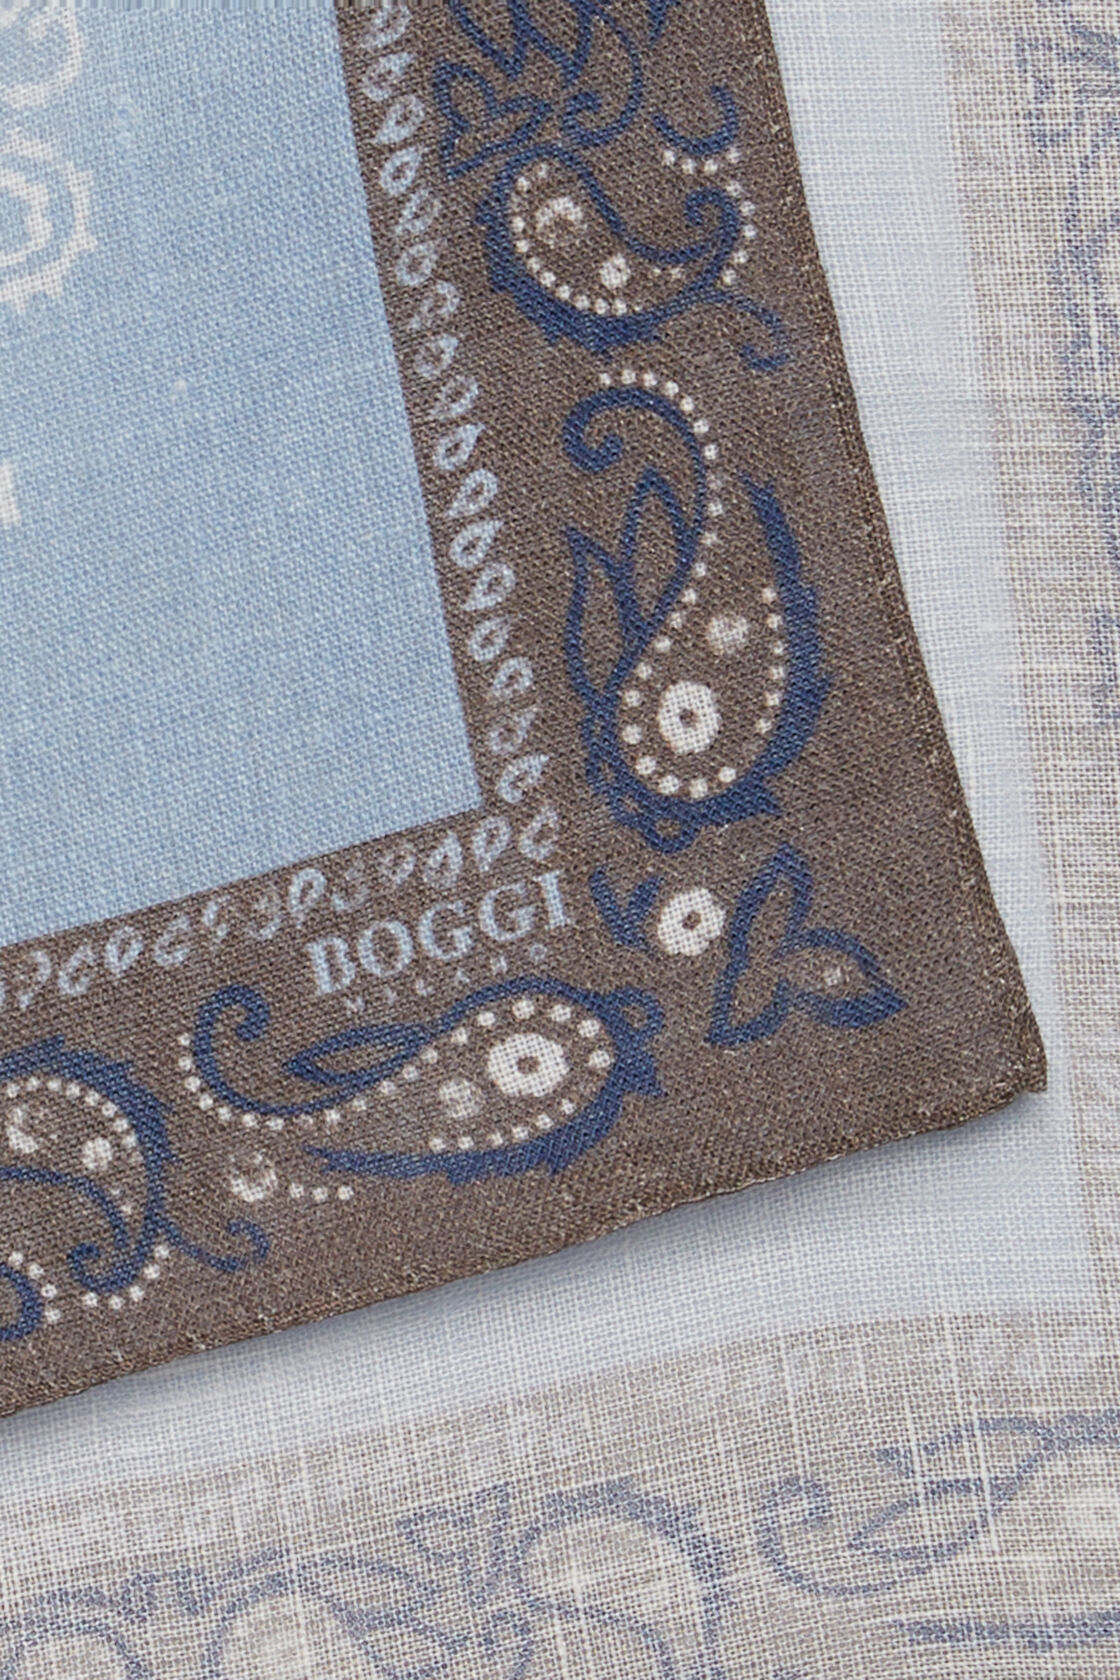 Λινό μαντηλάκι τσέπης με διάφορα μεγάλα σχέδια, Light Blue, hi-res